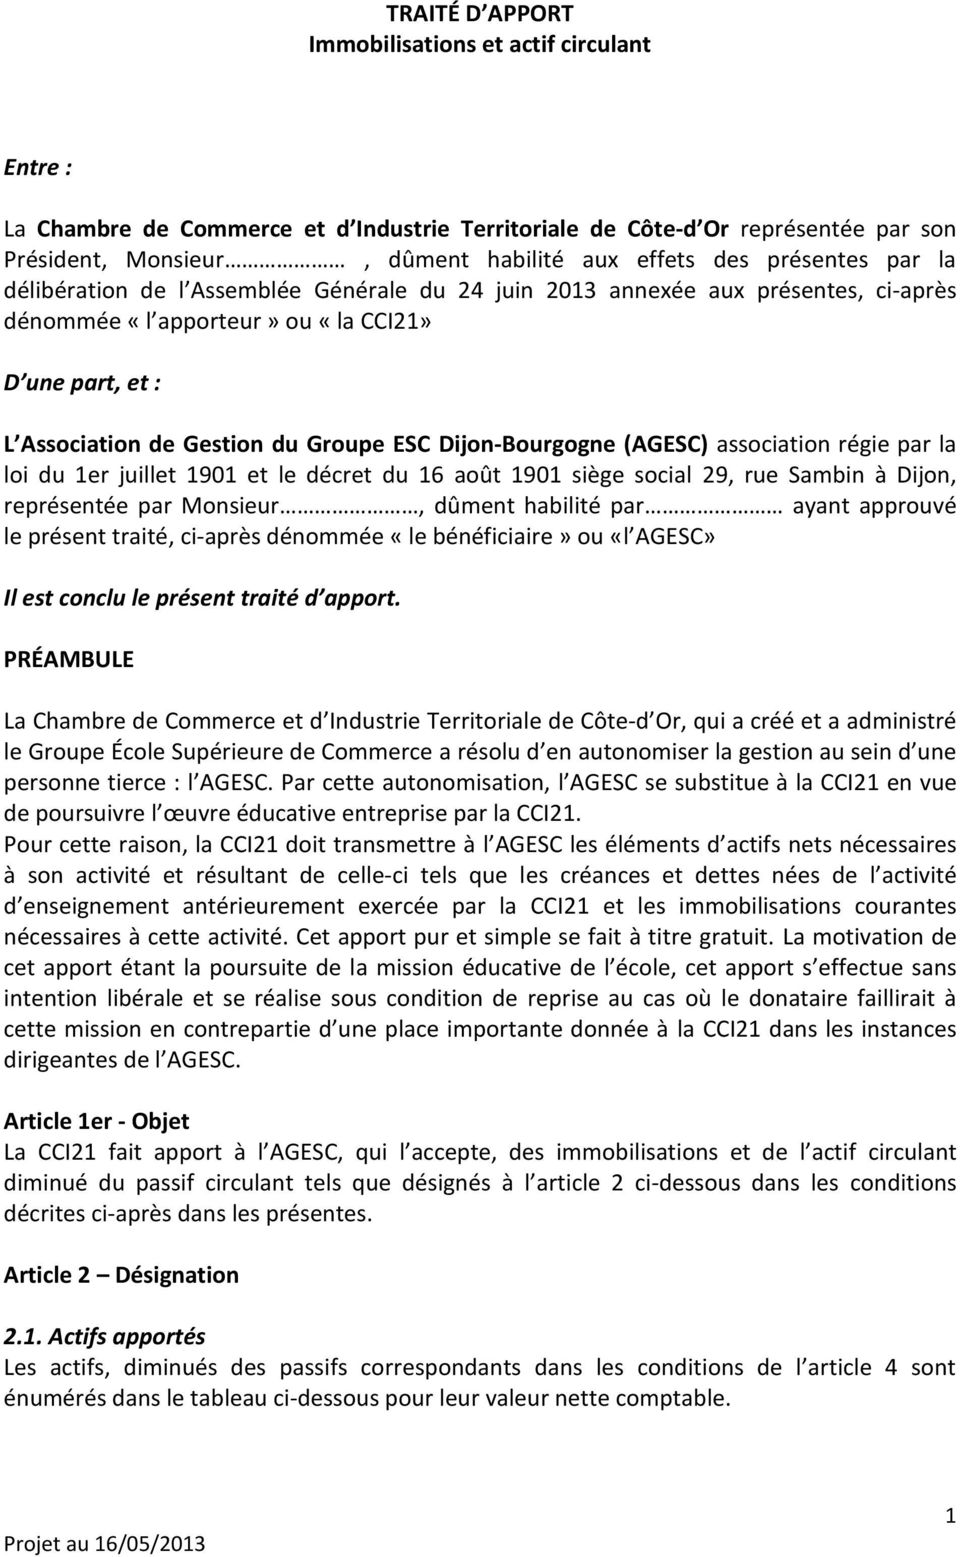 Dijon-Bourgogne (AGESC) association régie par la loi du 1er juillet 1901 et le décret du 16 août 1901 siège social 29, rue Sambin à Dijon, représentée par Monsieur, dûment habilité par ayant approuvé